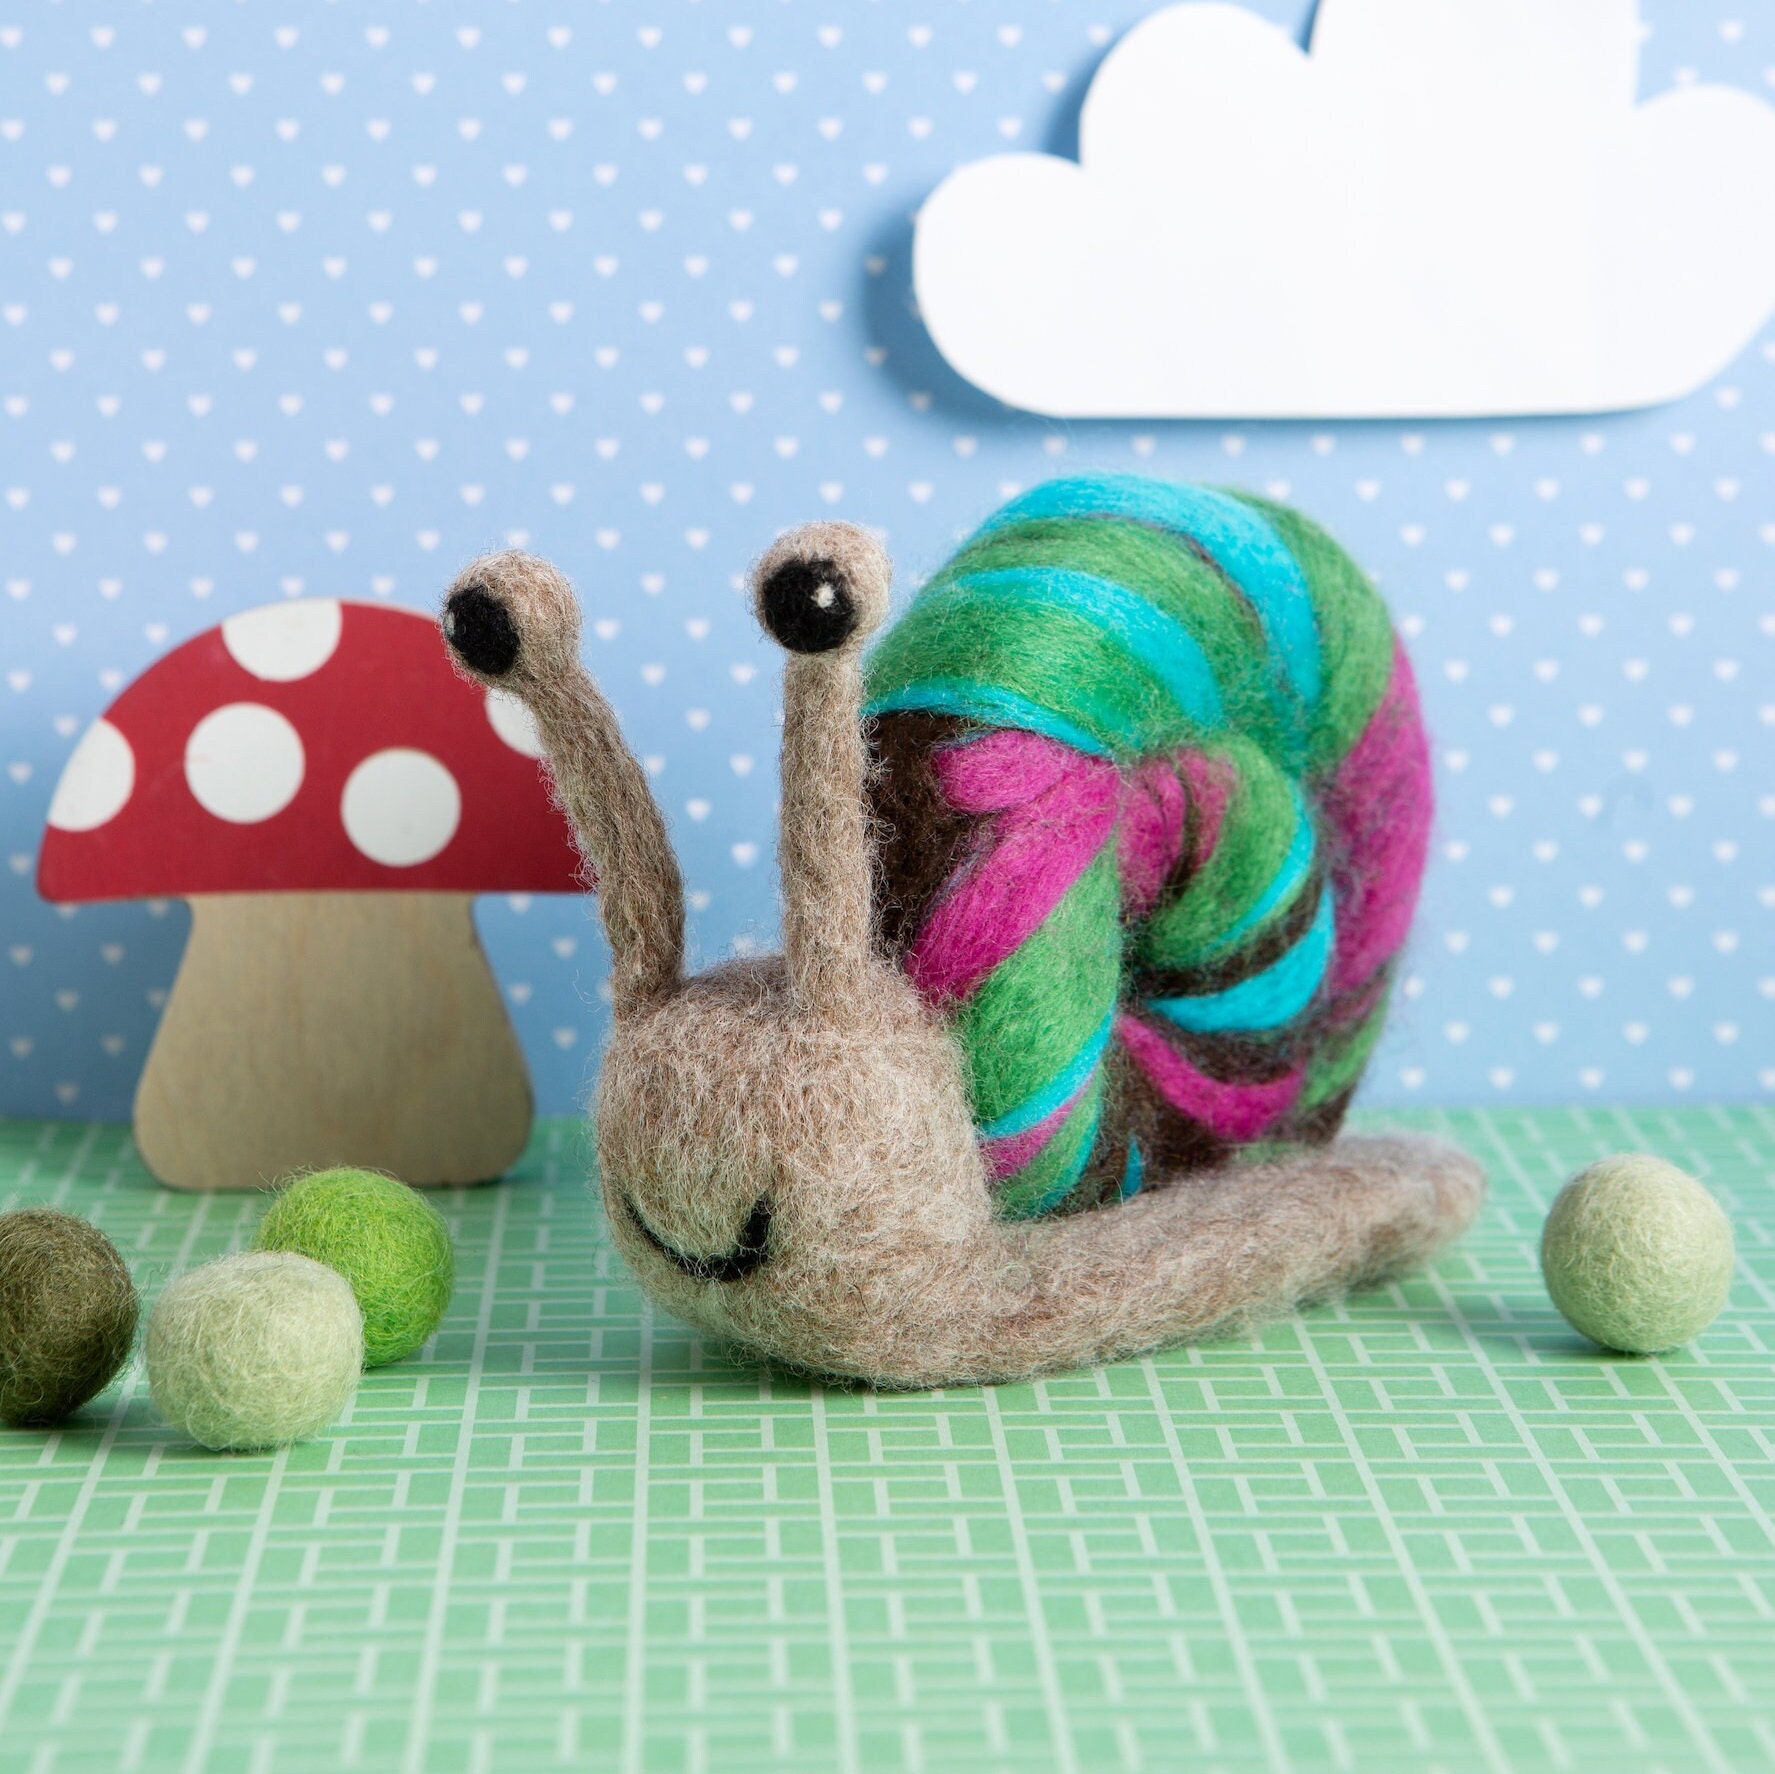 Lucky Snail Crochet Kit for Beginners, 3 Pcs Crochet Animal Kit, Crochet Starter Kit for Adult Kids with Complete Beginners Step-by-Step Video